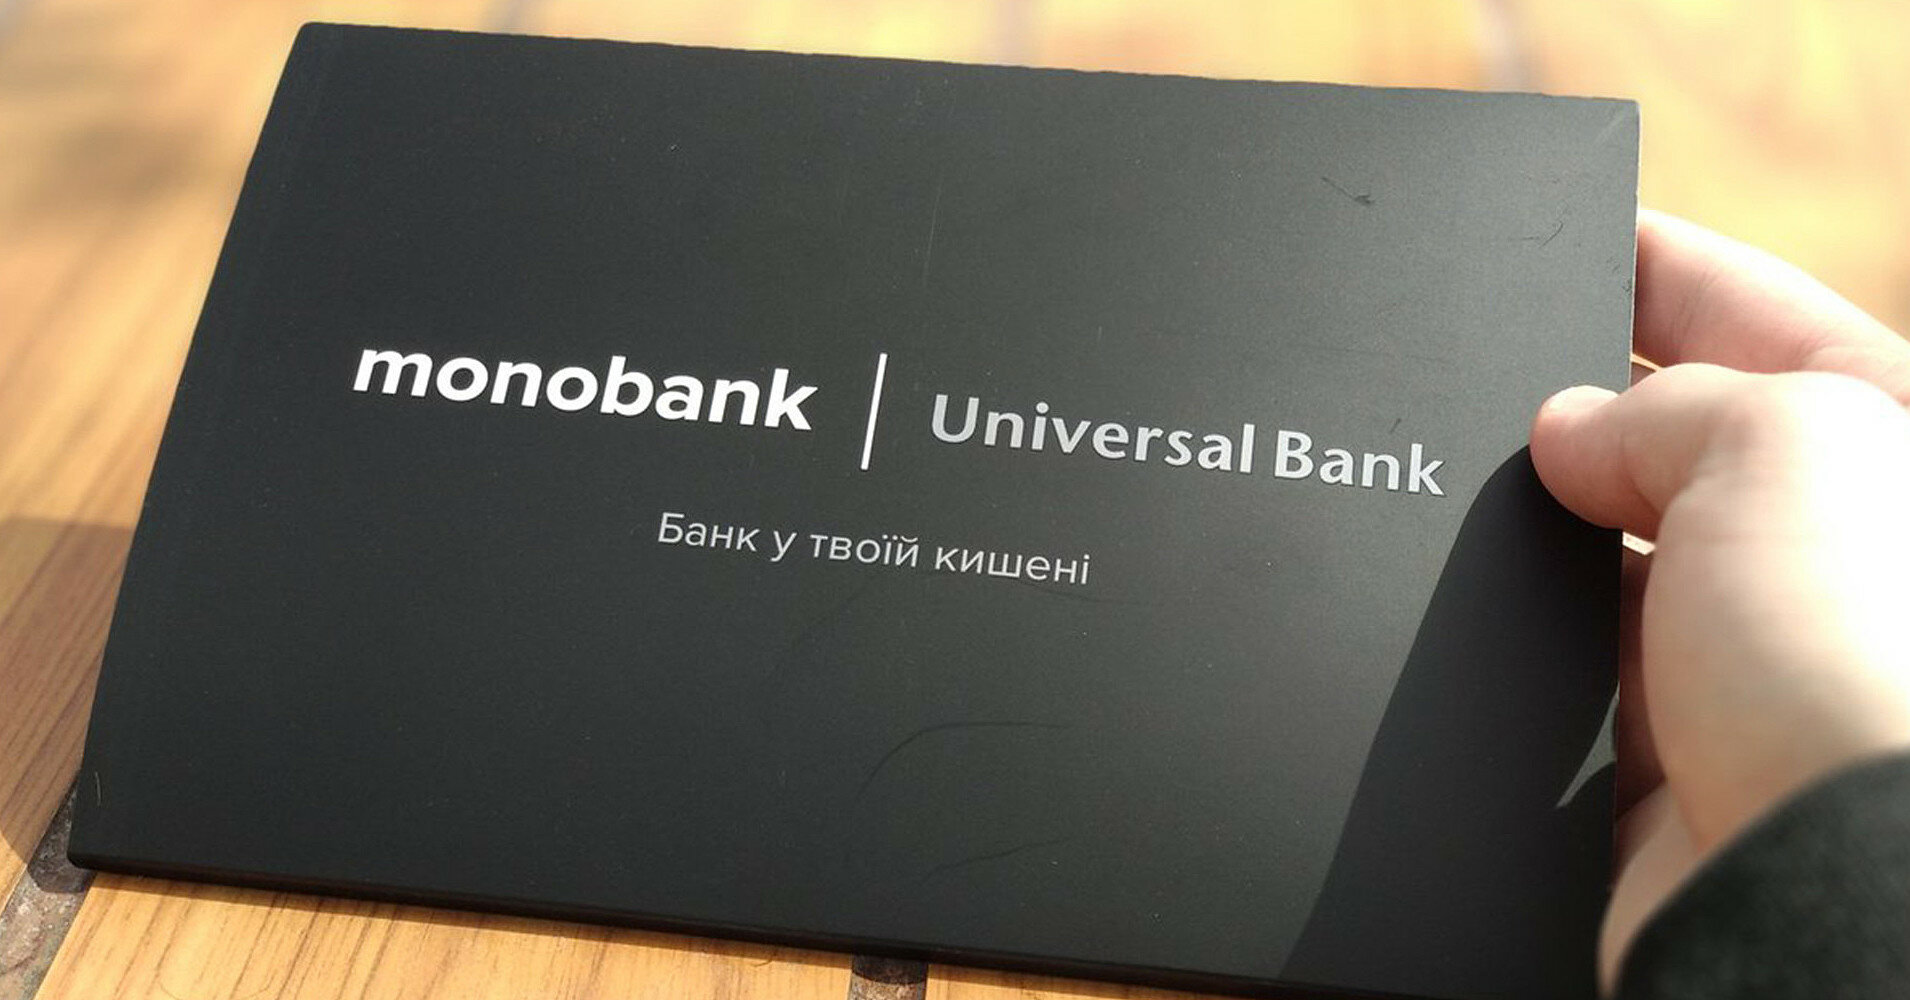 monobank планирует установить в Киеве банкоматы